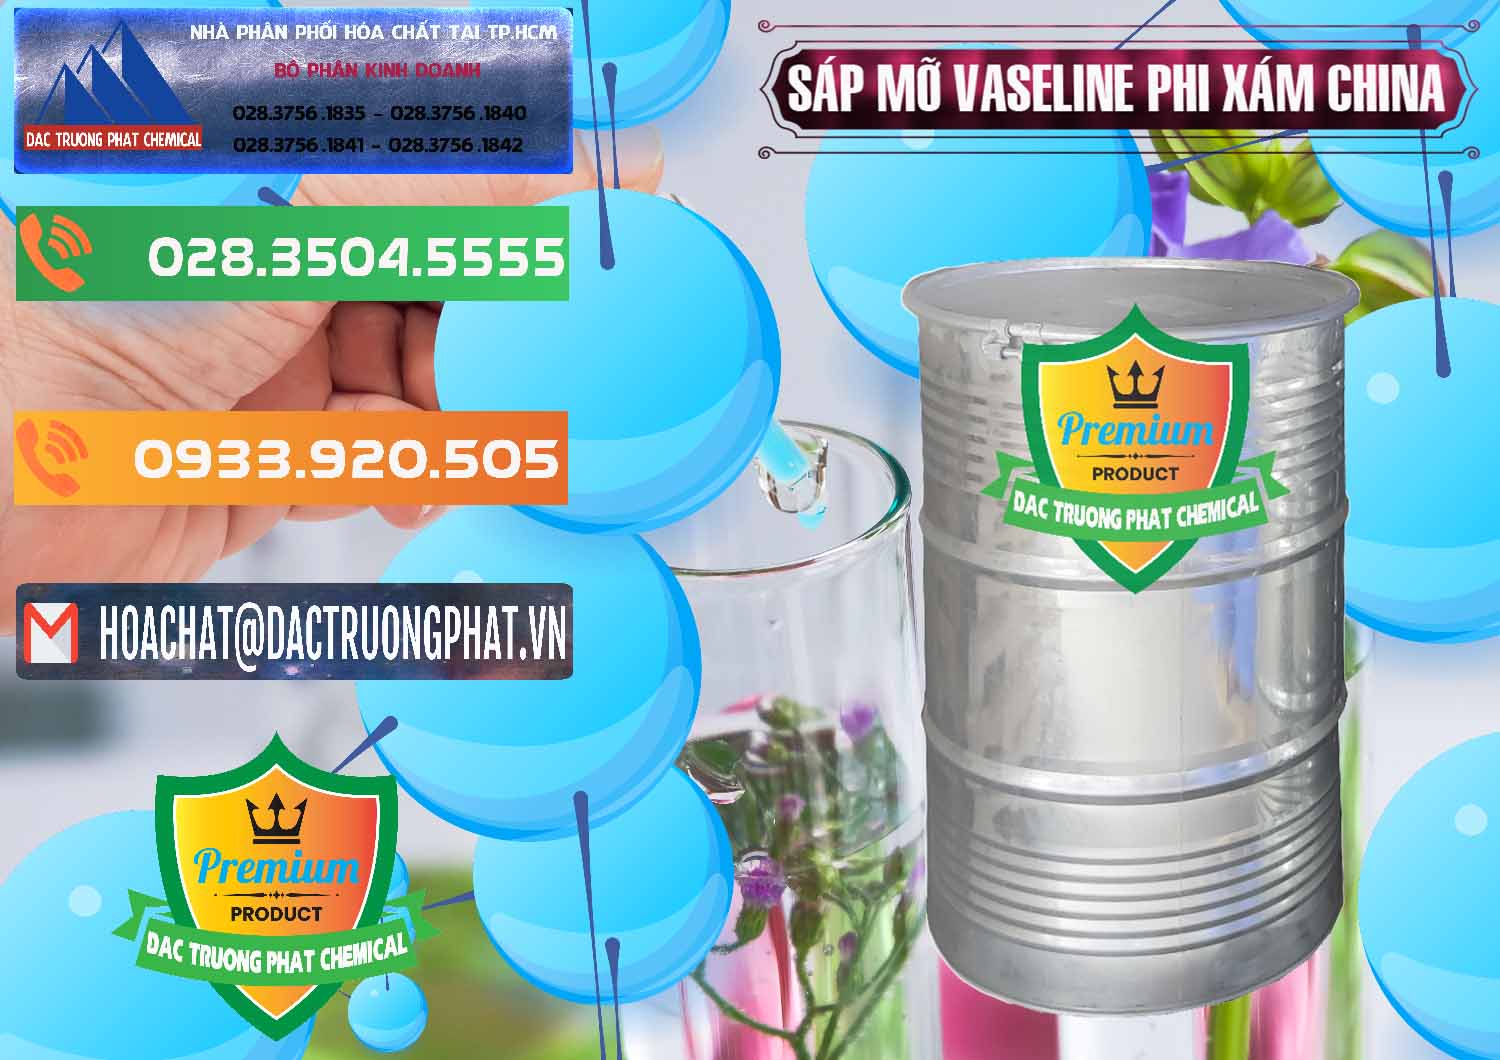 Nơi chuyên cung cấp & bán Sáp Mỡ Vaseline Phi Xám Trung Quốc China - 0291 - Nhà cung cấp và phân phối hóa chất tại TP.HCM - hoachatxulynuoc.com.vn